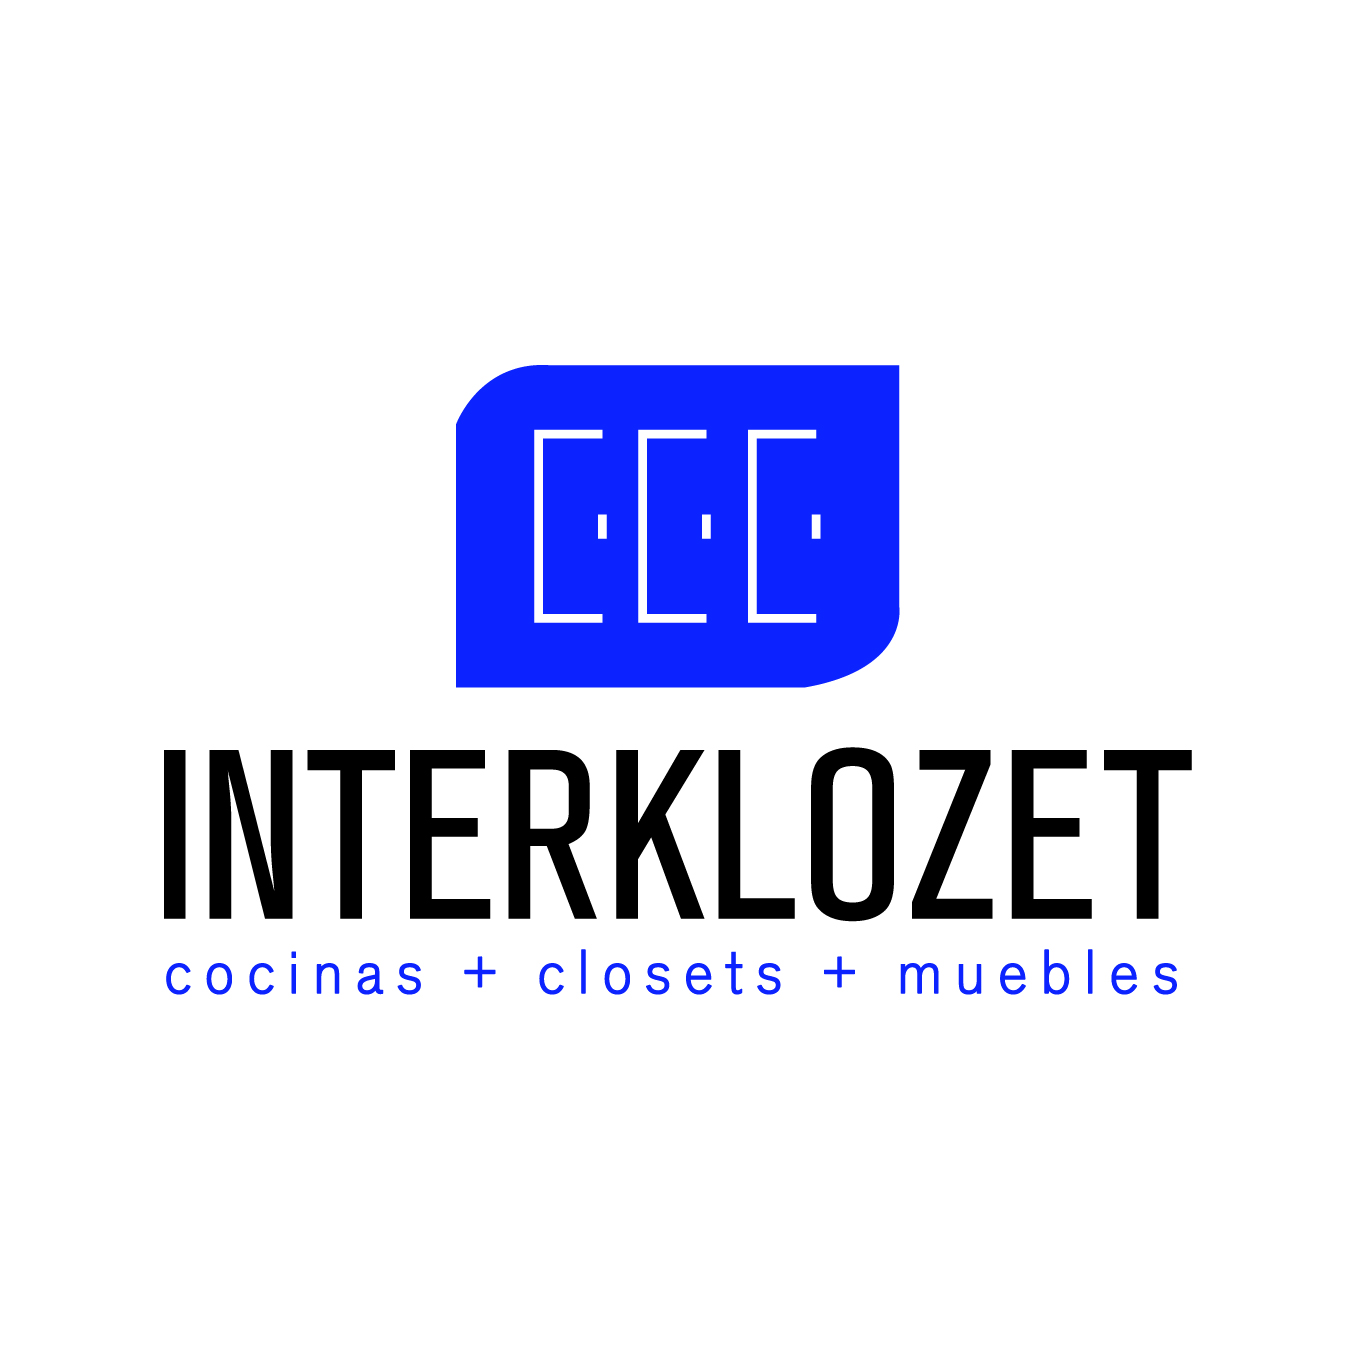 INTERKLOZET- Carpintería Residencial y Comercial, Cocinas, Closets, Muebles